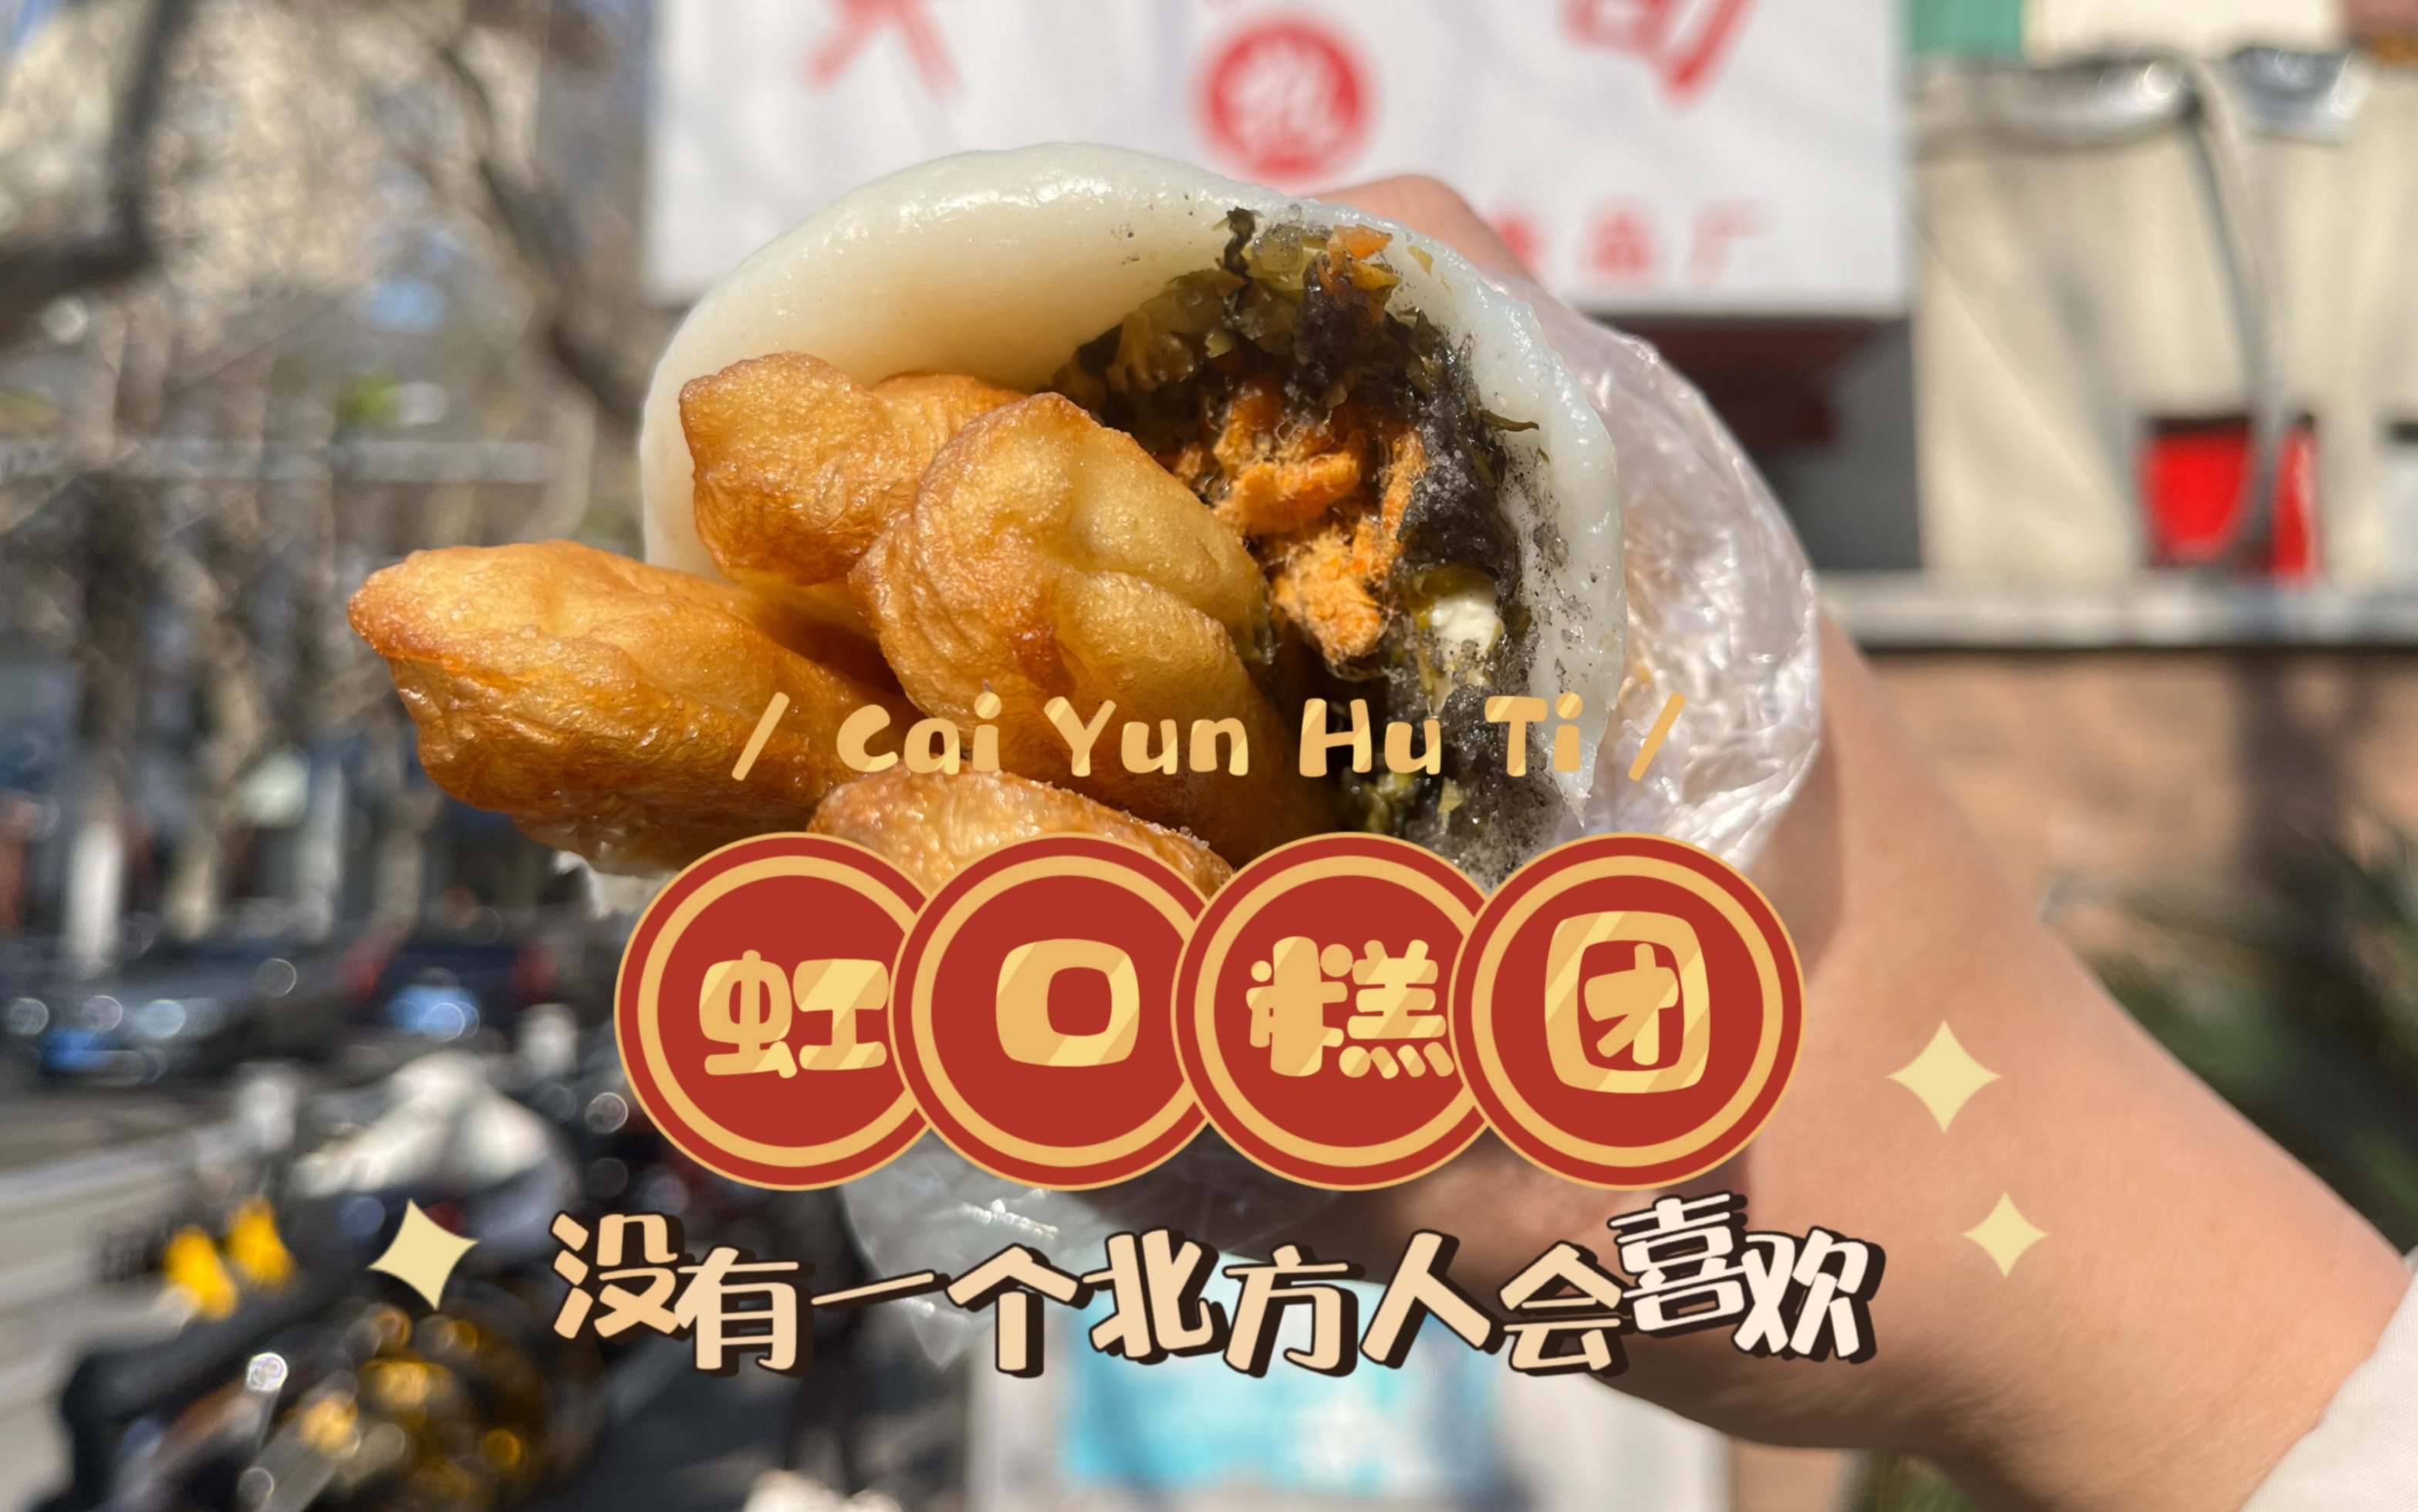 北方人来上海必吃系列，但是肯定100%的北方人会说不好吃，如果不是的话我就喝尿